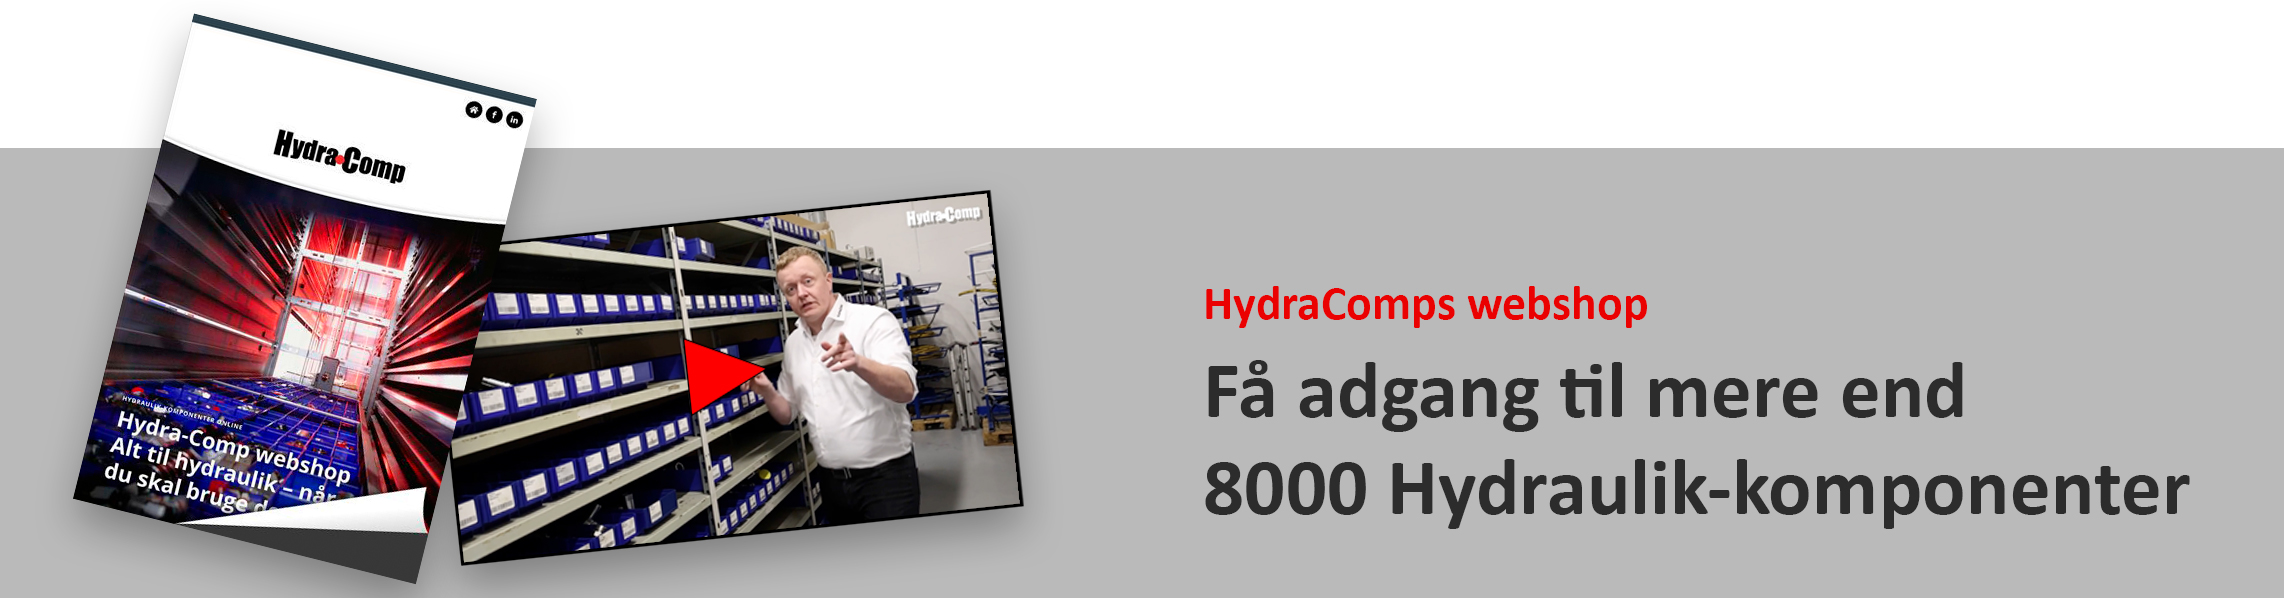 Få adgang til mere end 8000 hydraulik-komponenter i vores webshop